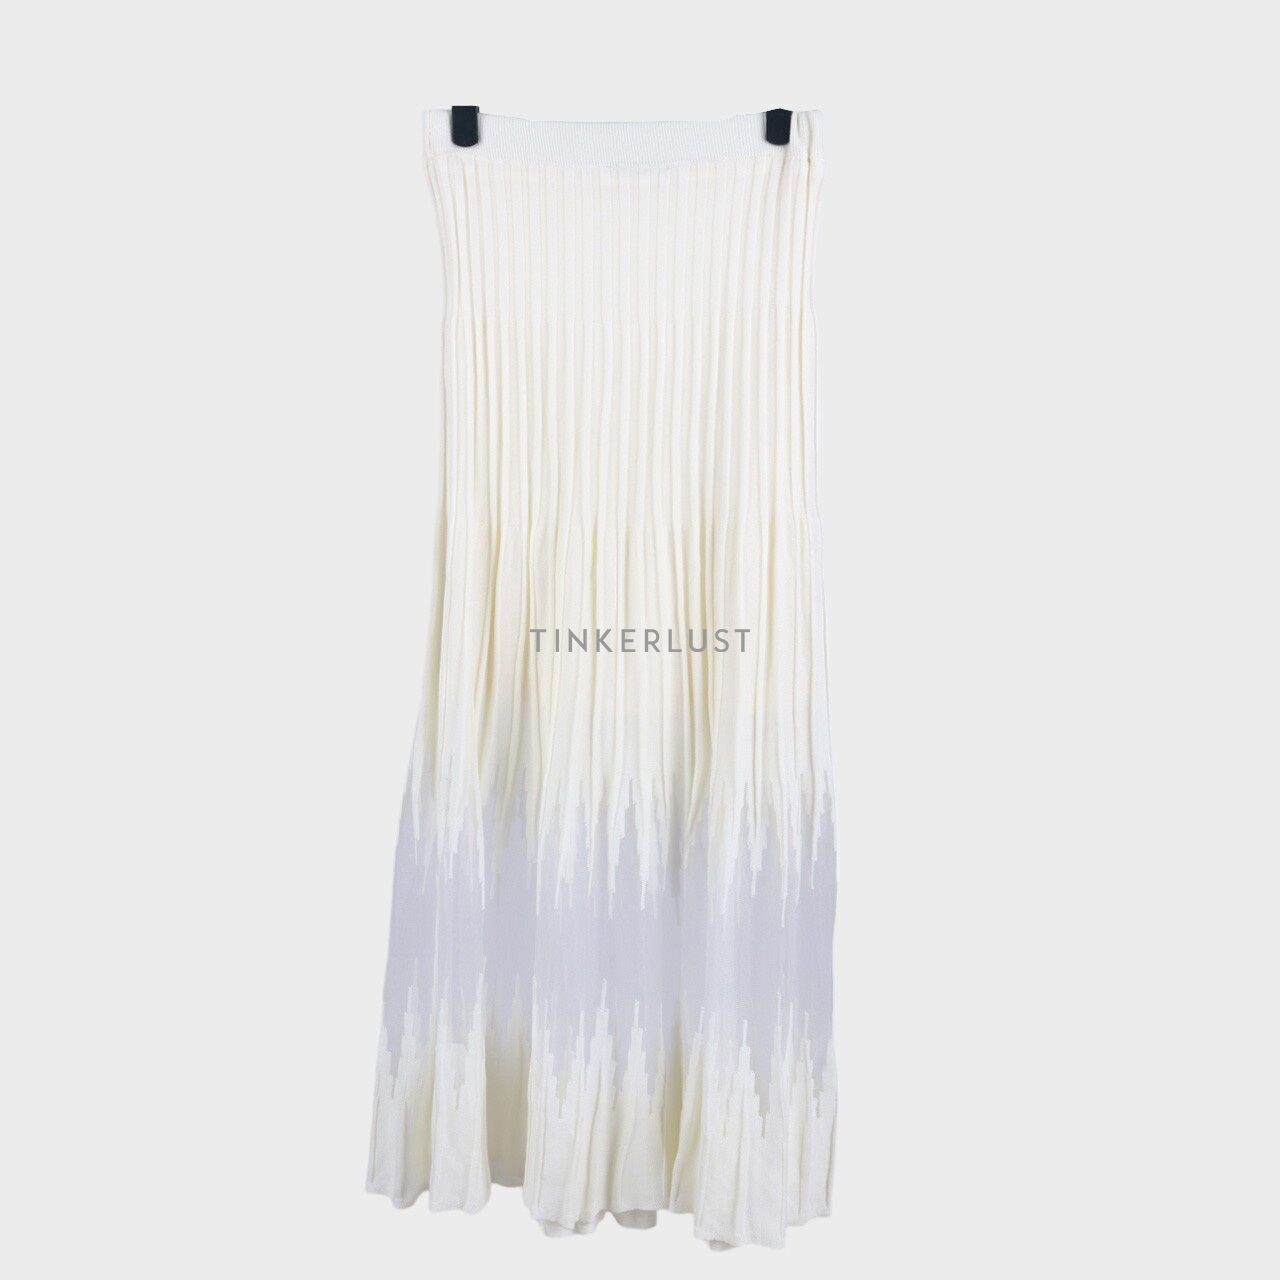 Zara Broken White Sheer Knit Skirt Maxi